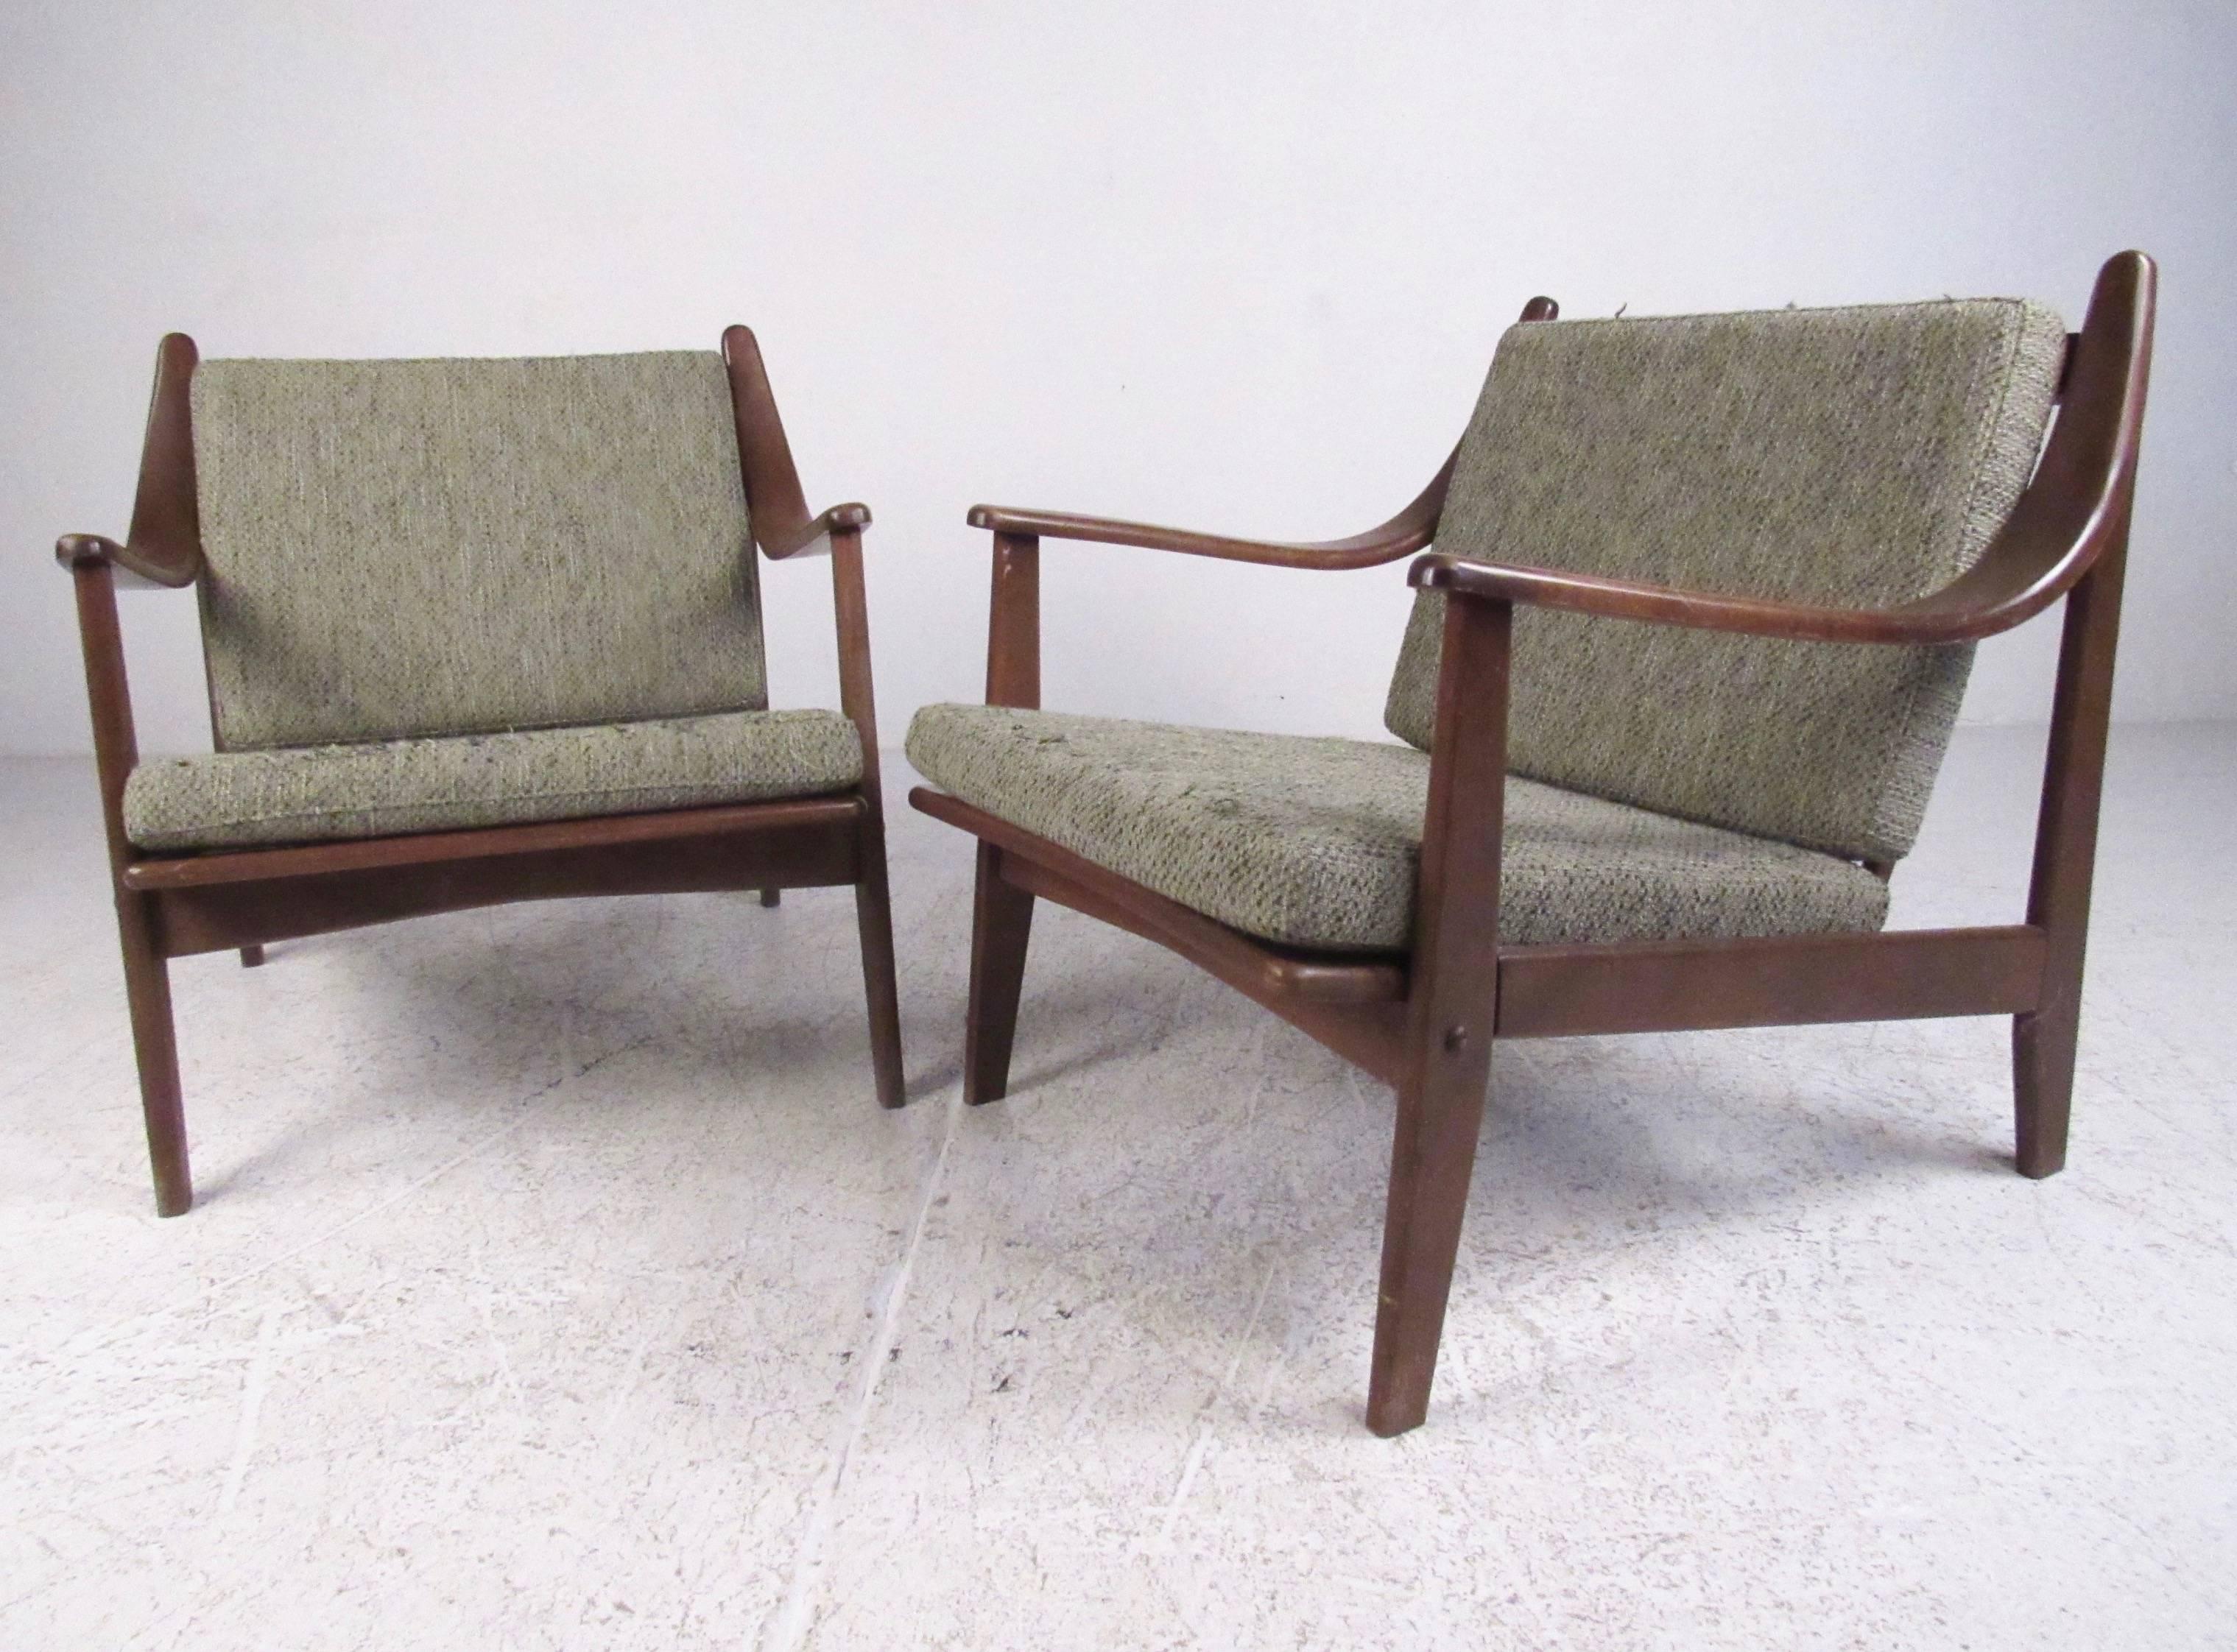 Cette paire élégante de chaises longues modernes du milieu du siècle présente une construction en noyer sculpté et un confortable rembourrage vintage. Les dossiers en forme d'épingle et les accoudoirs inclinés uniques ajoutent au style moderne